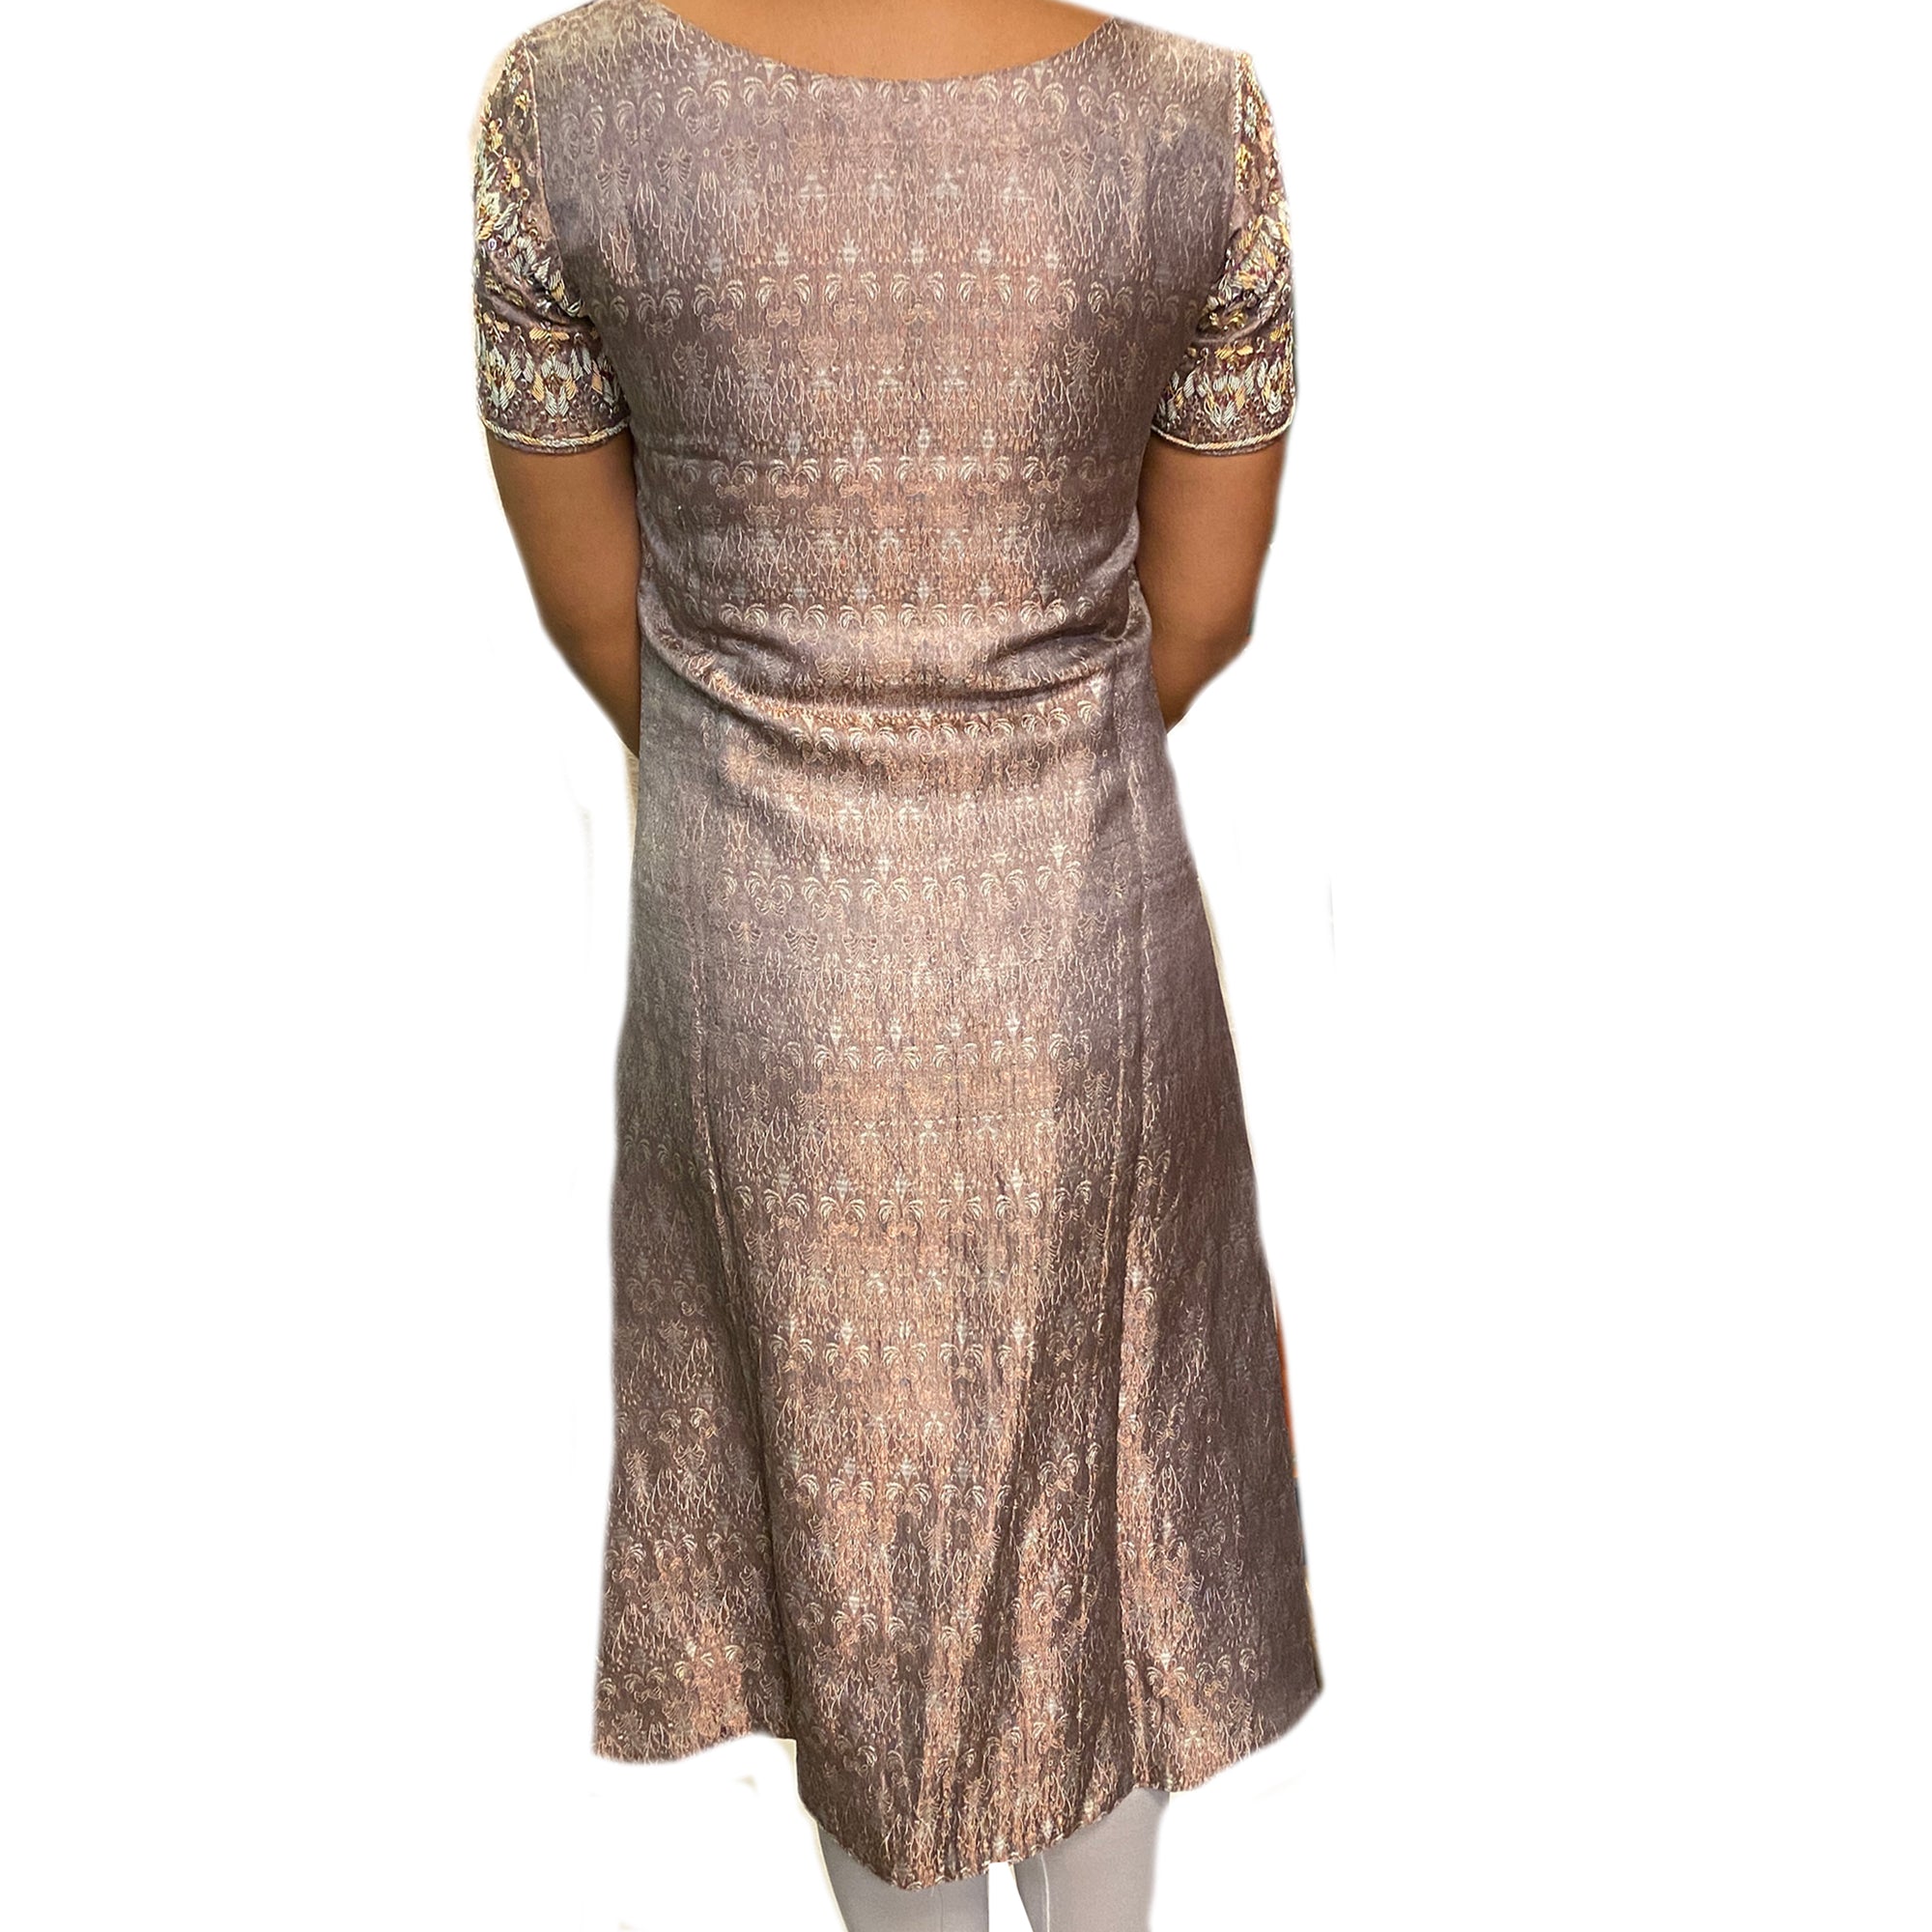 Vintage Copper Silver Brocade Dress - Vintage India NYC